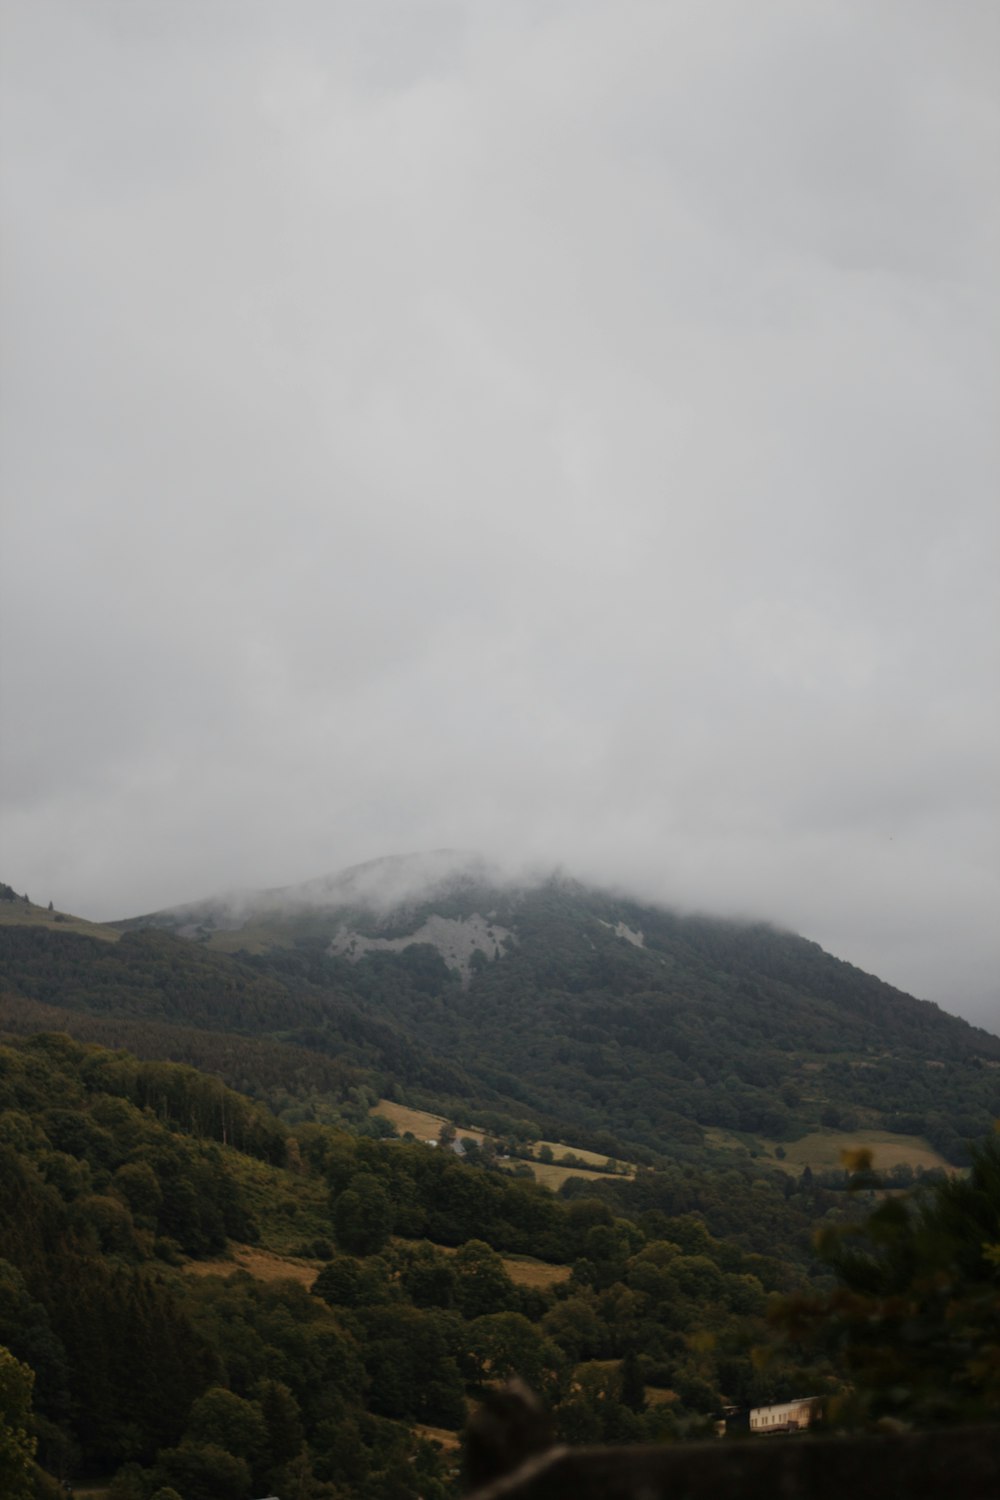 montagne verdi e marroni sotto nuvole bianche durante il giorno